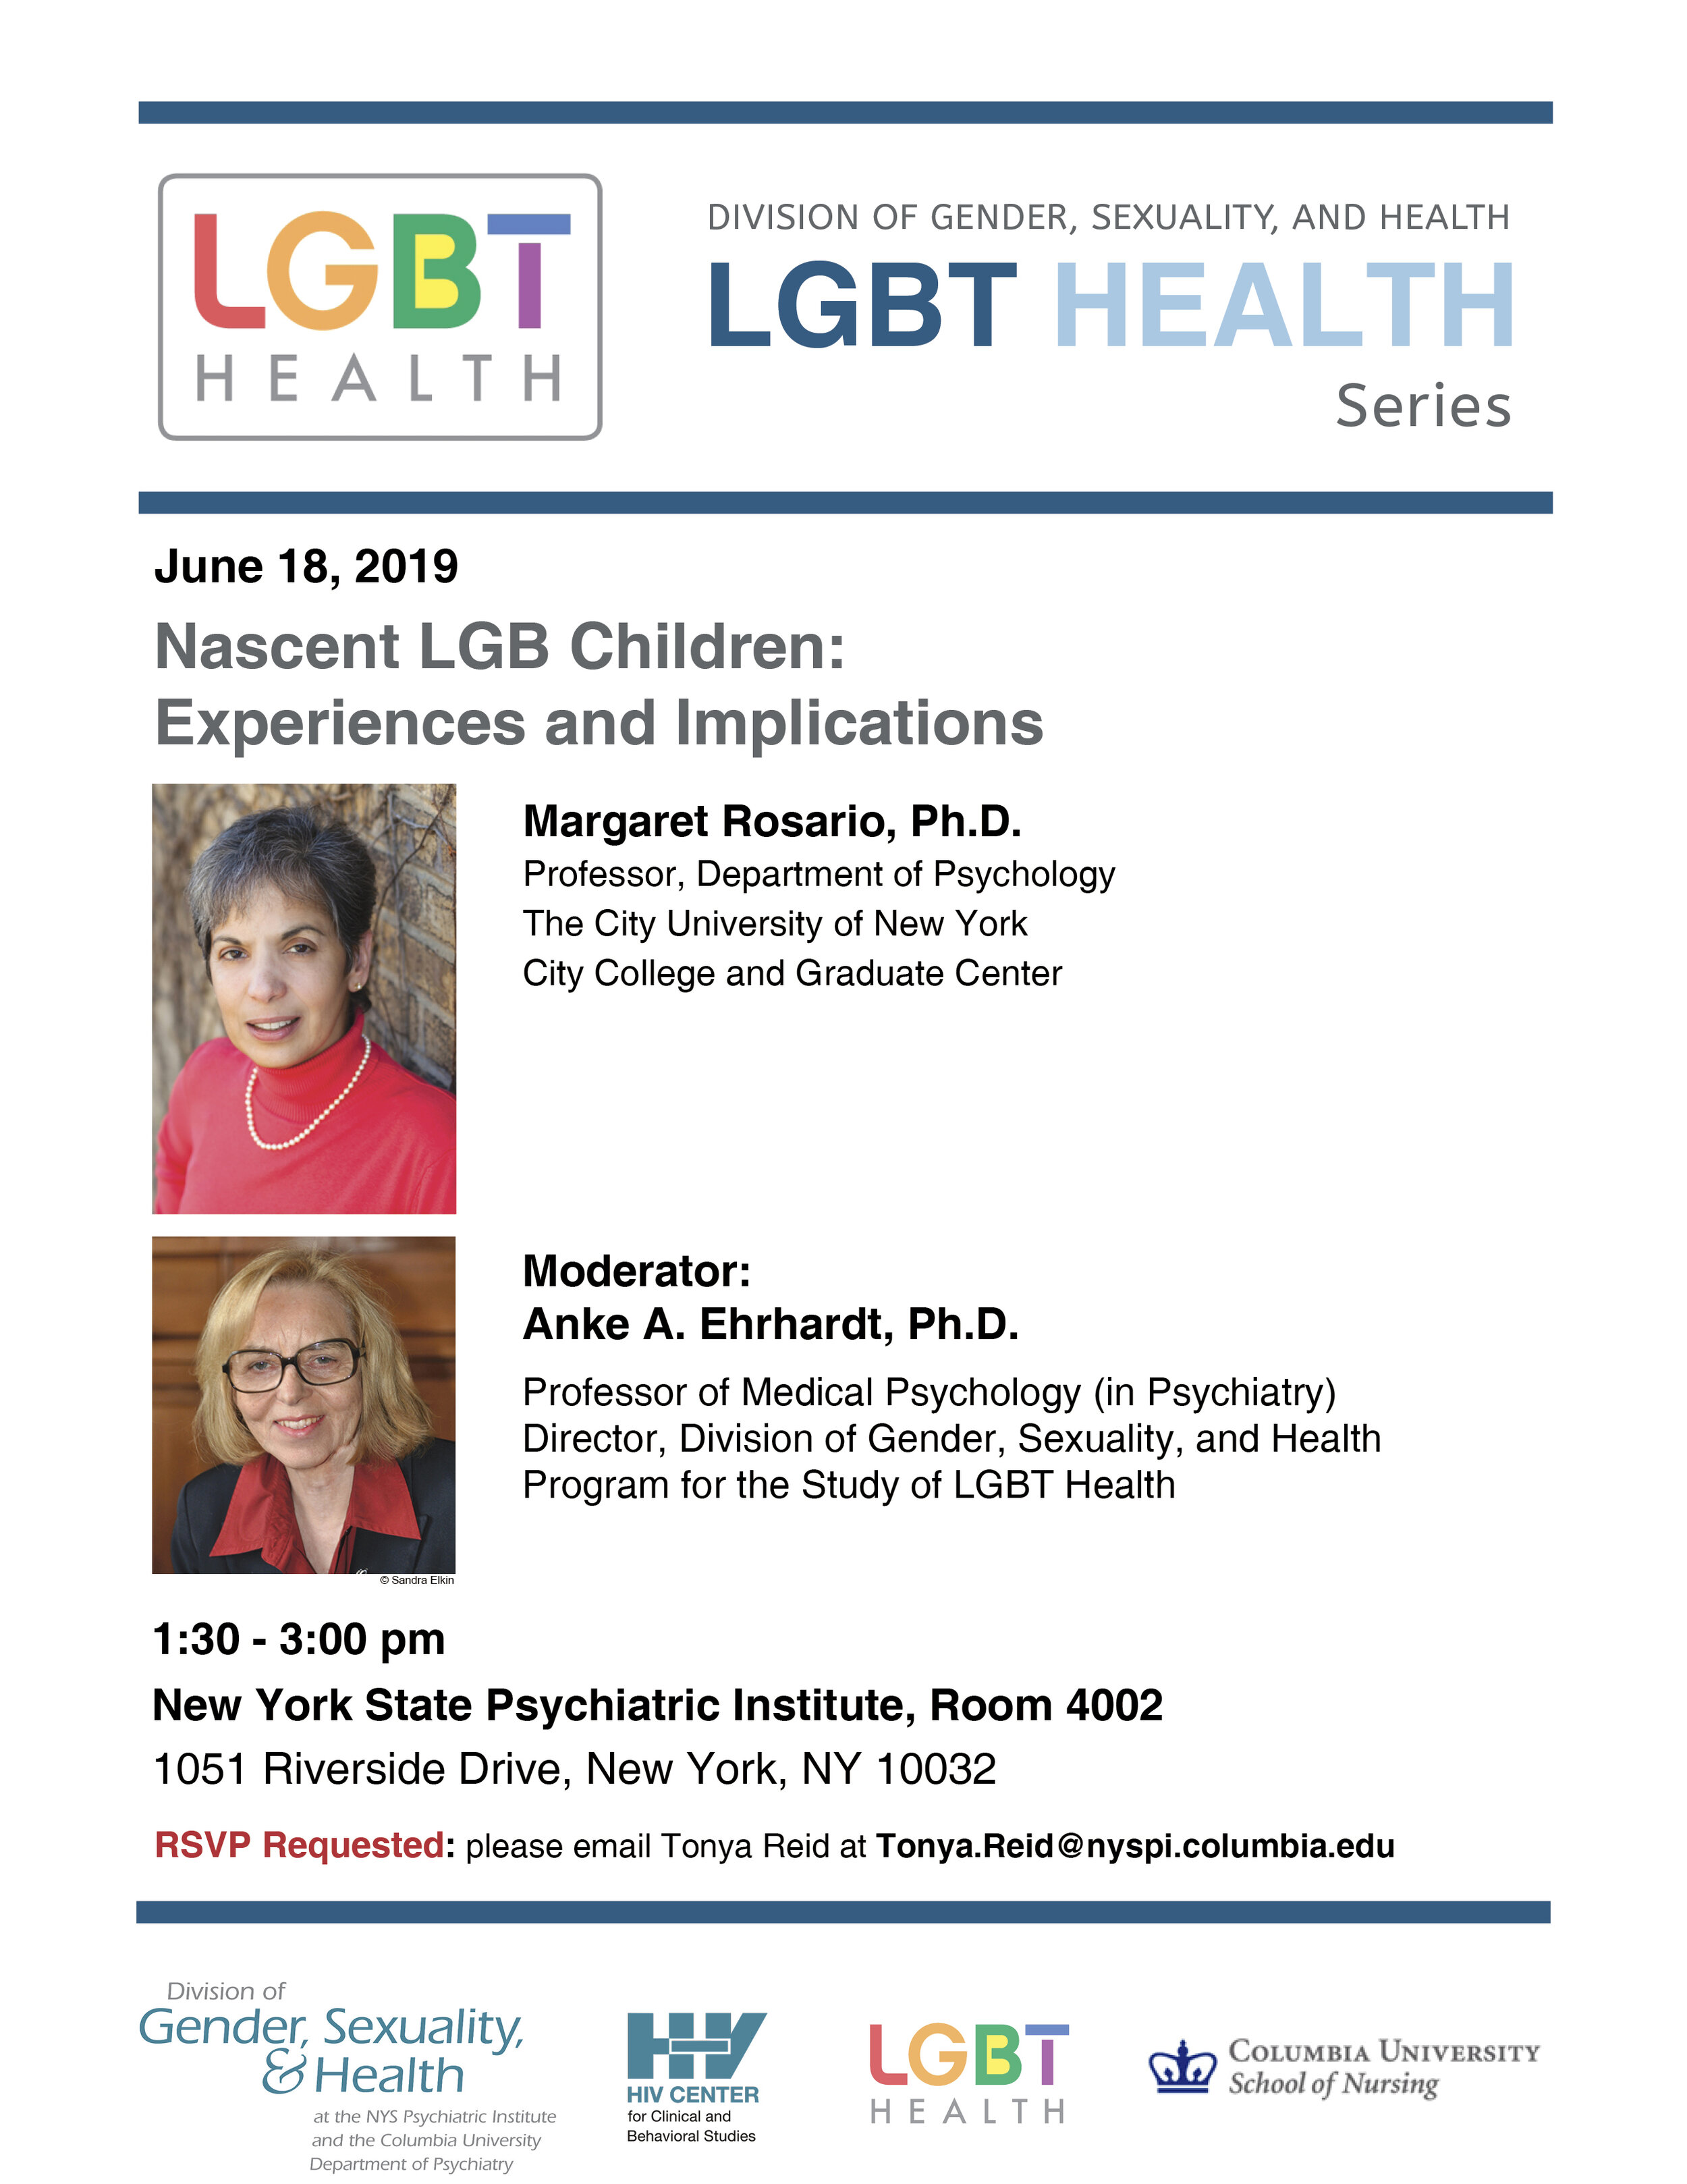 LGBT Health Series June 18 2019 REVISED.jpg